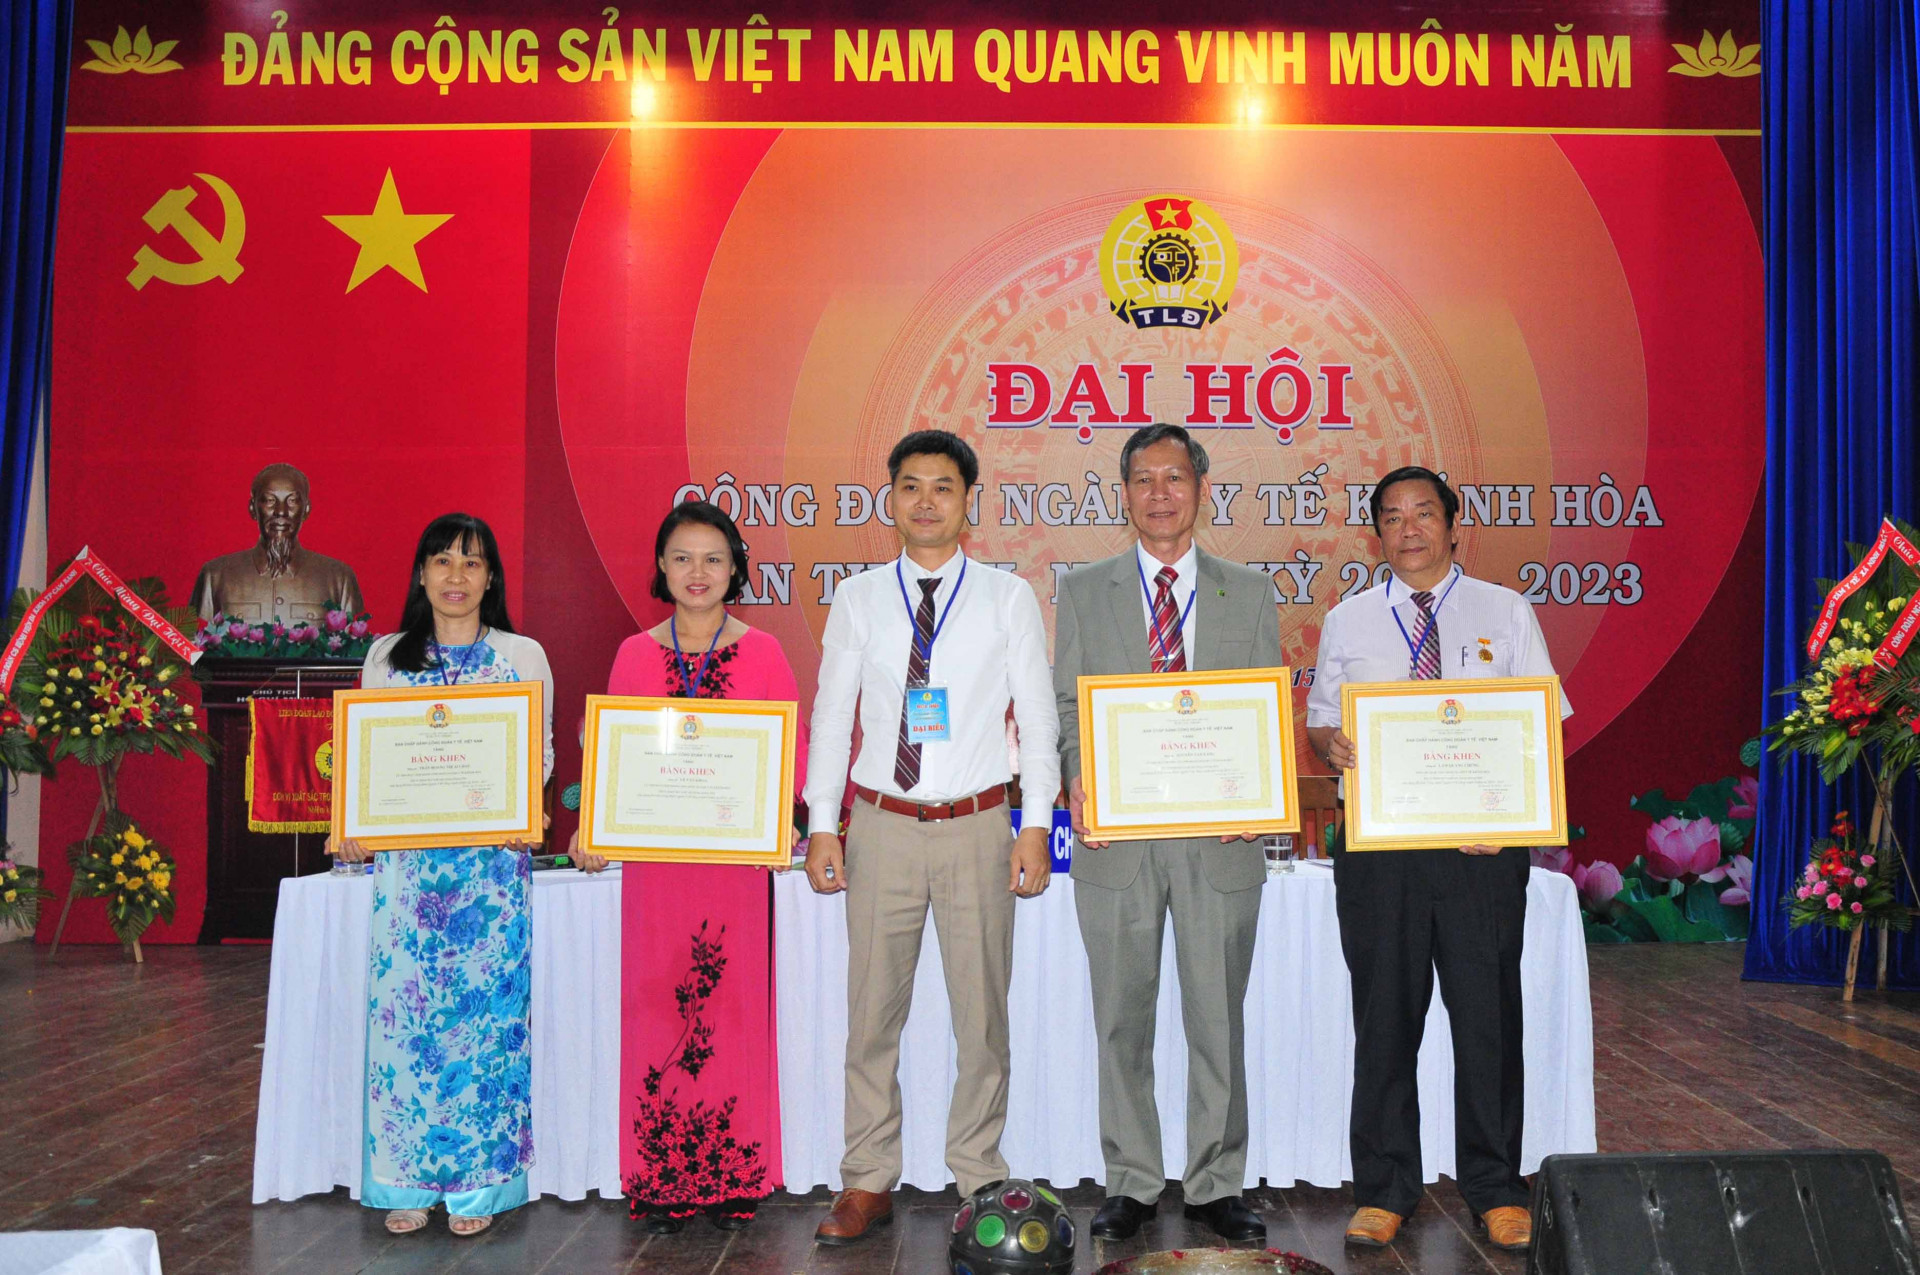 Các đoàn viên công đoàn xuất sắc nhận bằng khen của Công đoàn Y tế Việt Nam